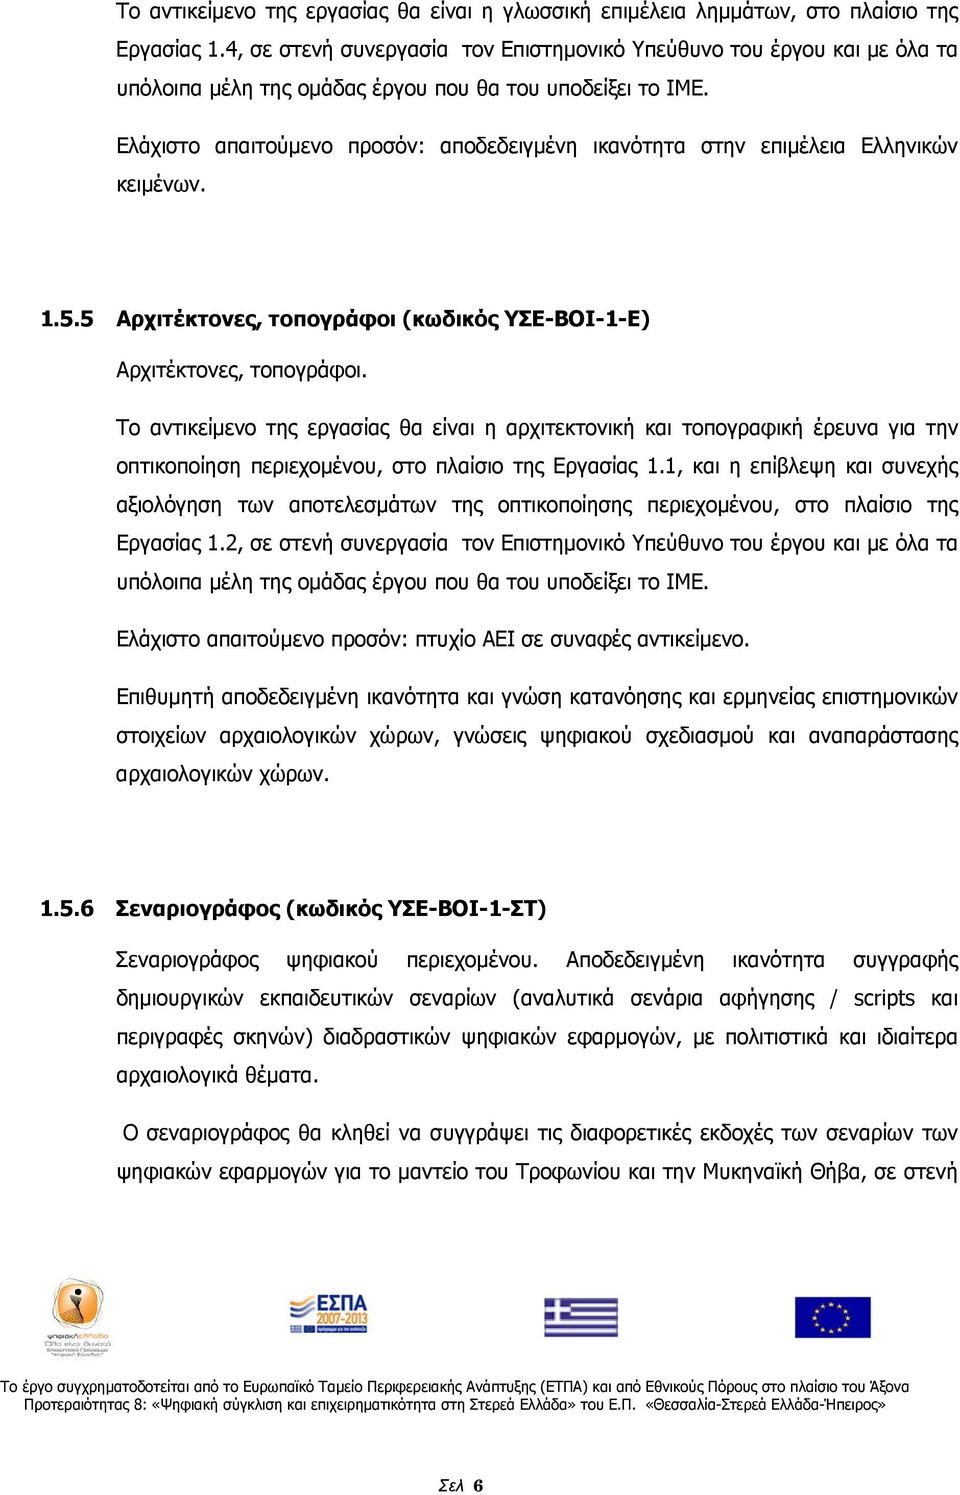 Ελάχιστο απαιτούμενο προσόν: αποδεδειγμένη ικανότητα στην επιμέλεια Ελληνικών κειμένων. 1.5.5 Αρχιτέκτονες, τοπογράφοι (κωδικός ΥΣΕ-ΒΟΙ-1-Ε) Αρχιτέκτονες, τοπογράφοι.